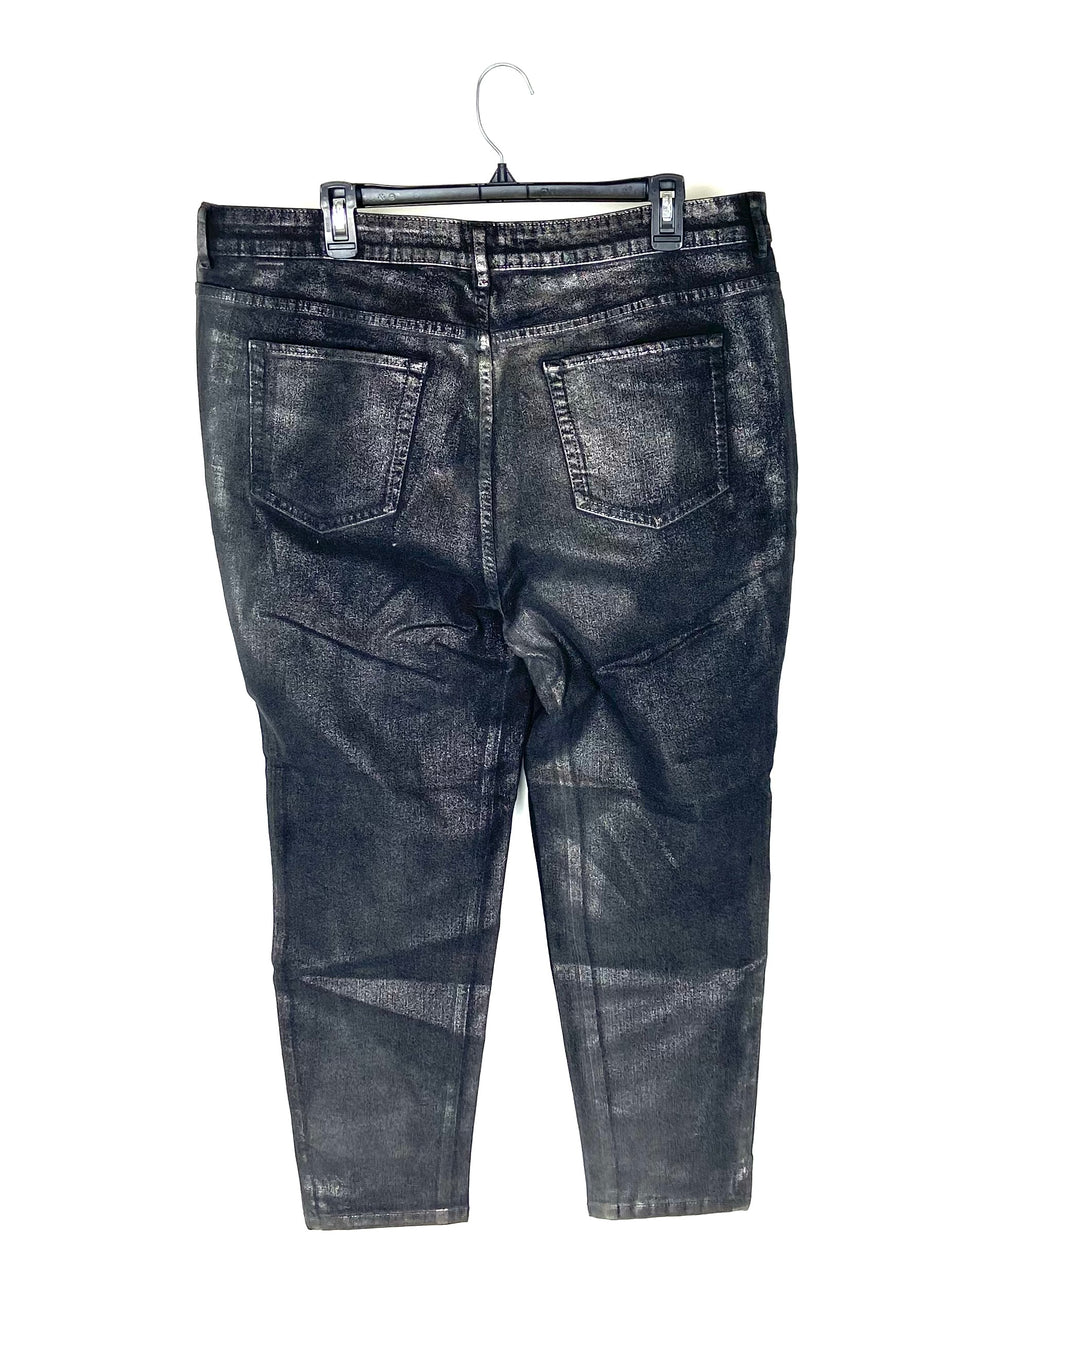 Shiny Skinny Jeans - 20WP